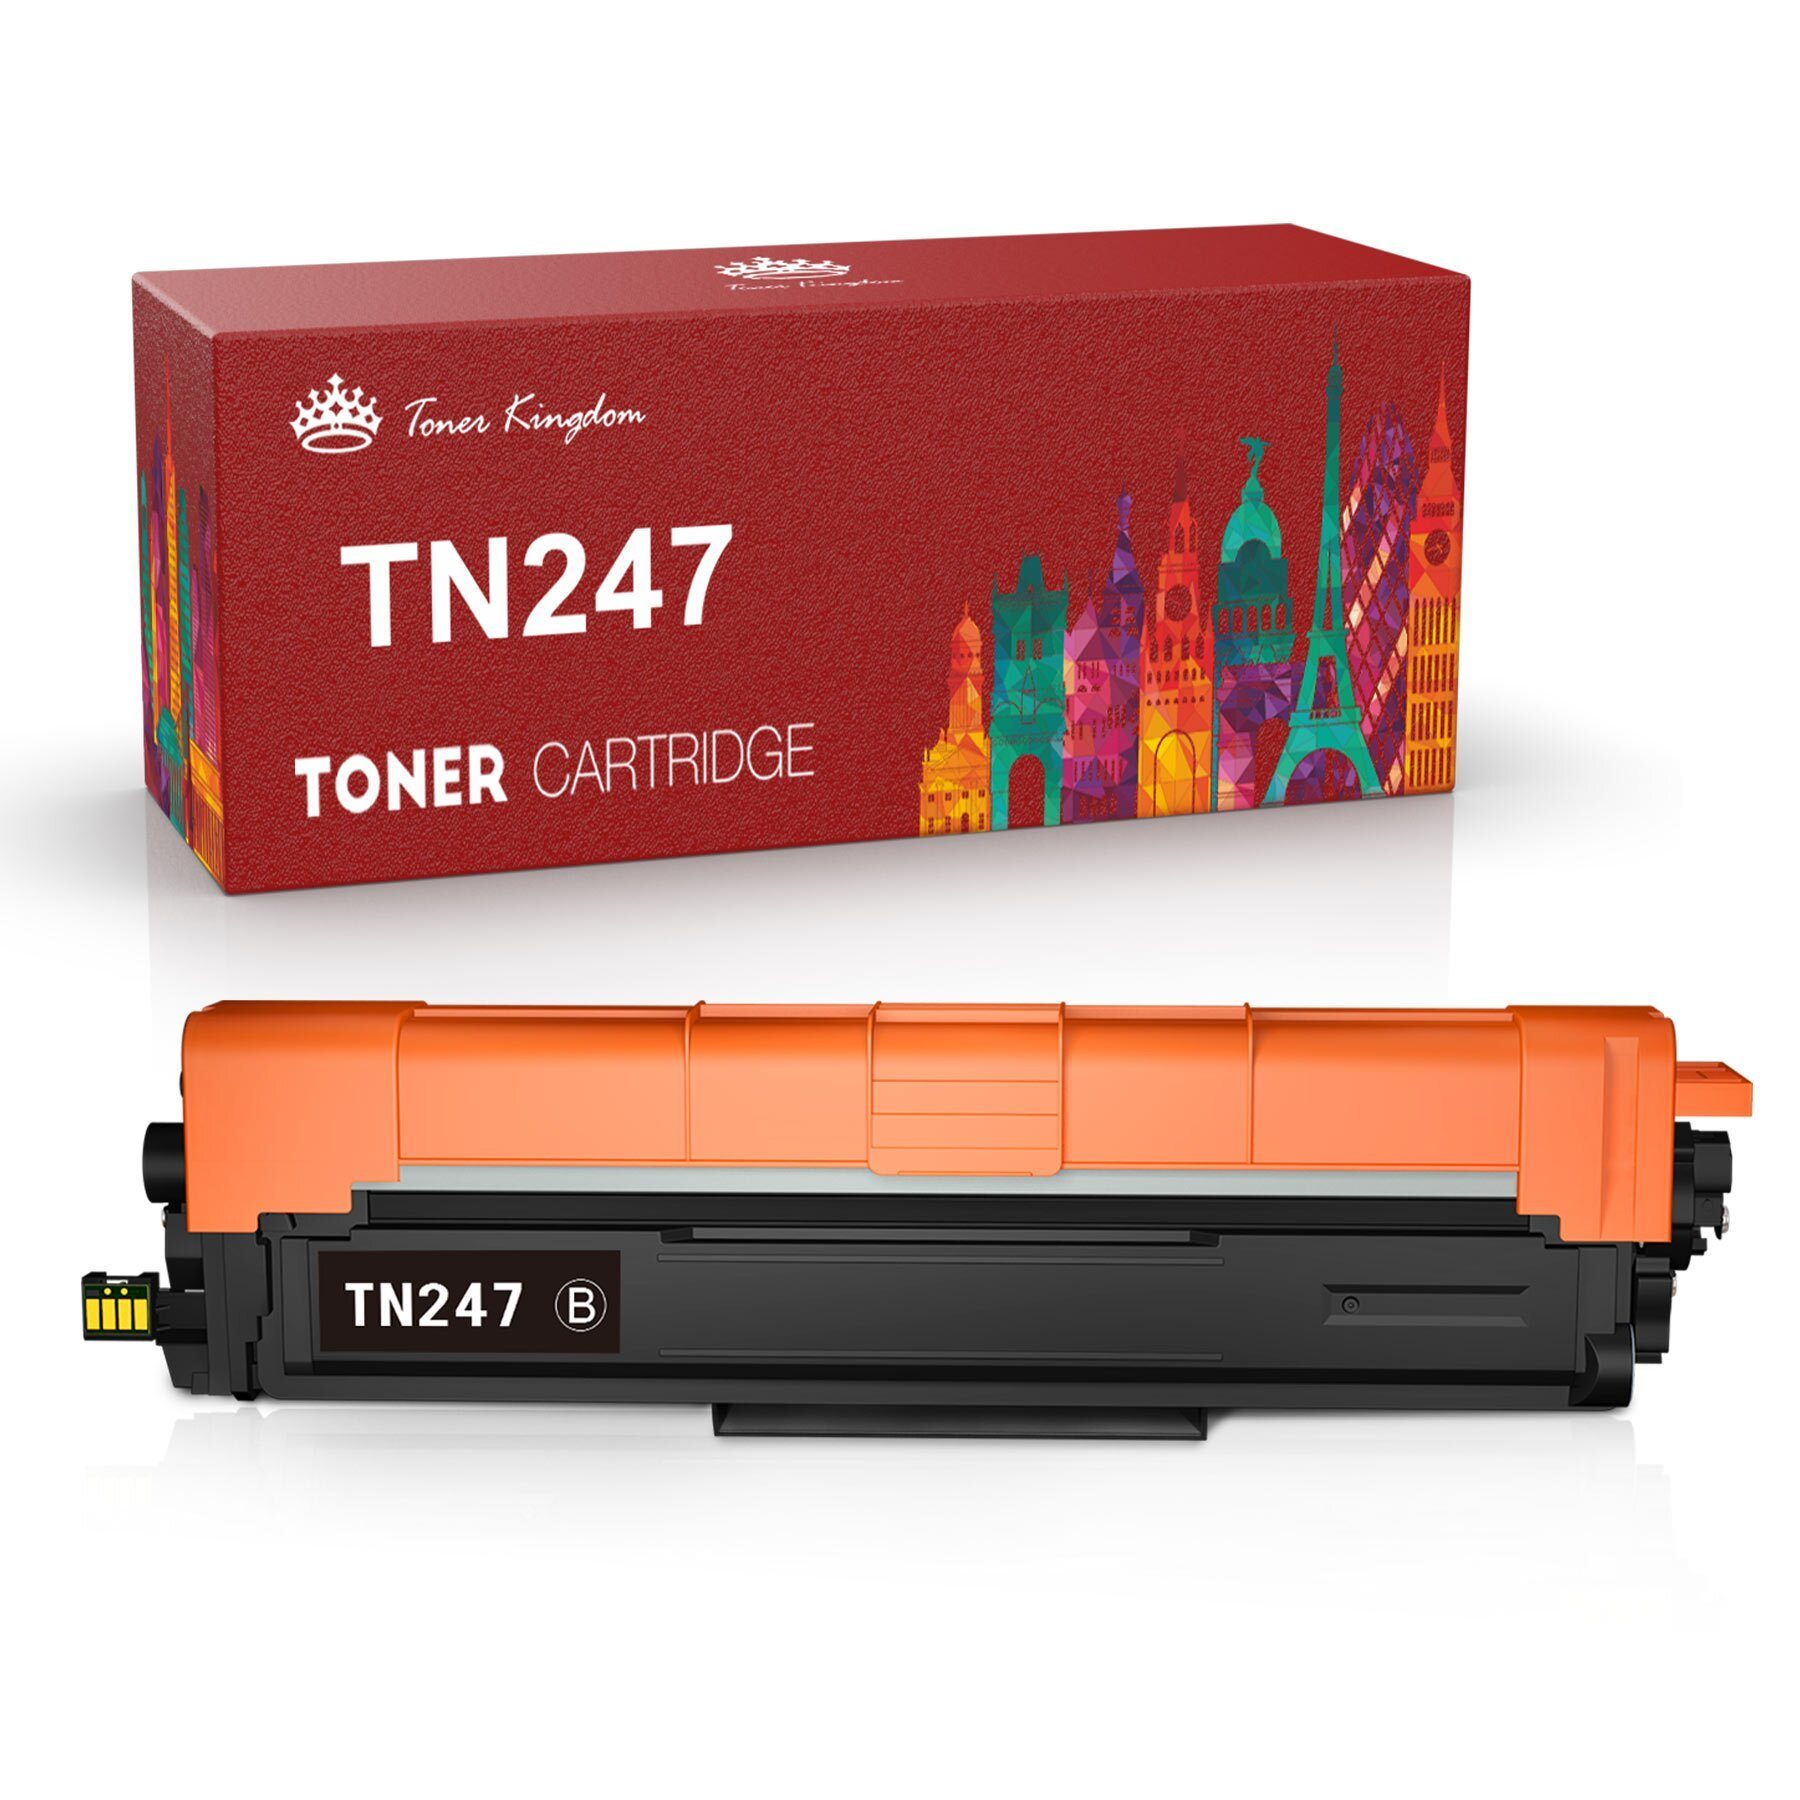 Toner Kingdom Tonerpatrone, (Kompatibel für Brother TN 247 TN 243 Brother TN243), MFC-L3750CDW DCP-L3550CDW HL-L3210CW XXL